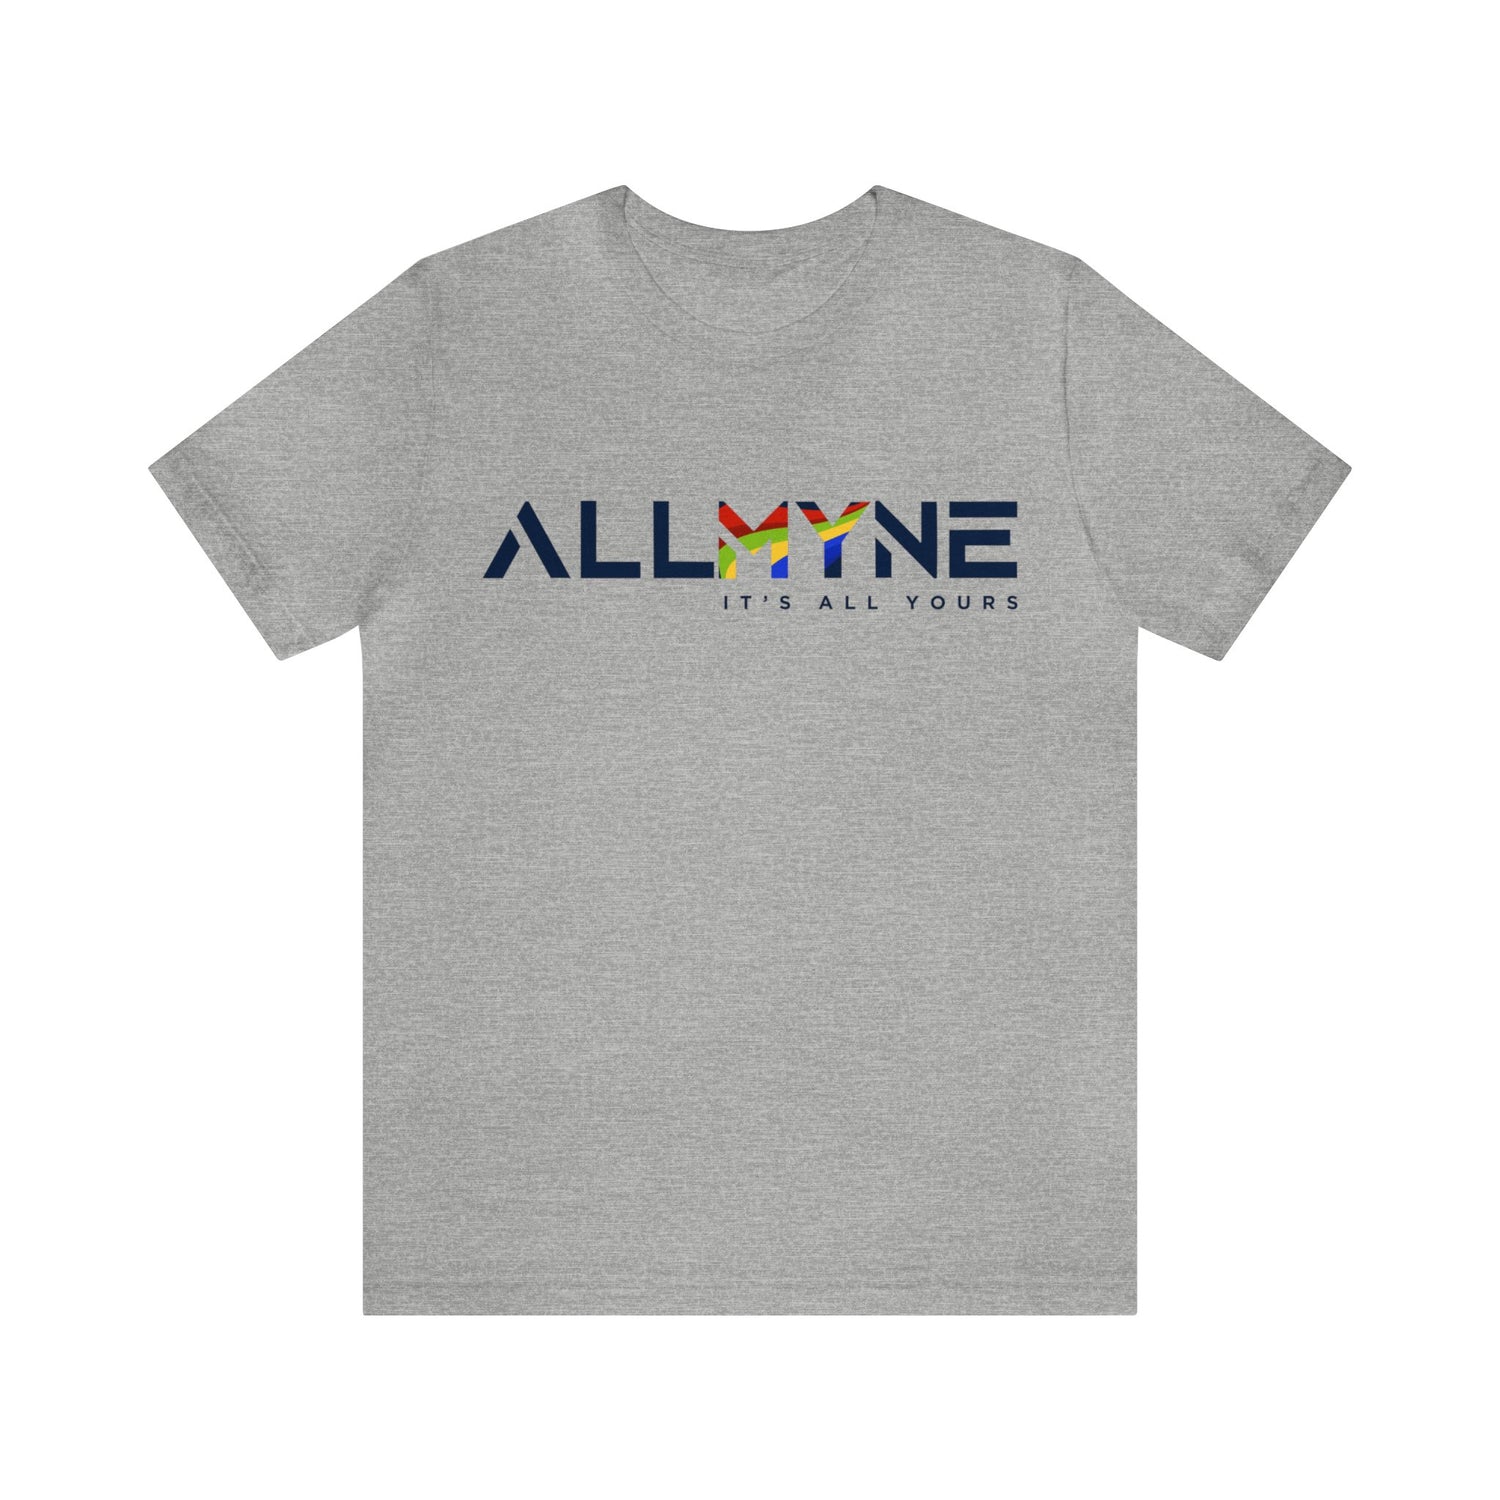 T-shirt classique avec logo ALLMYNE